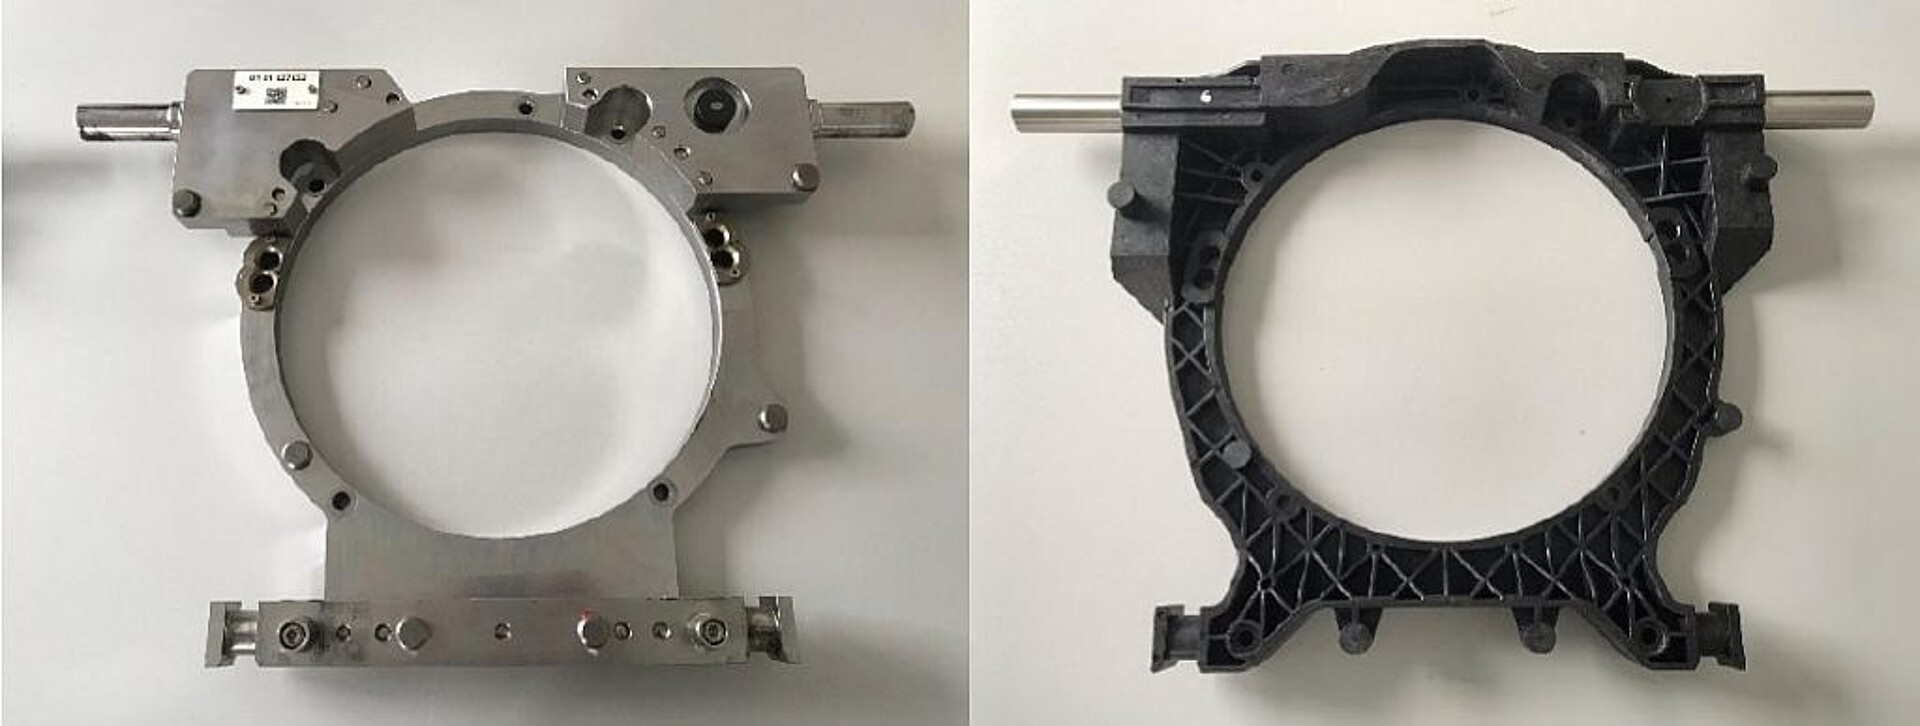 Vergleich der Stahl- und der Kunststoffvariante der Adapterplatte. (Fotos: Barlog)